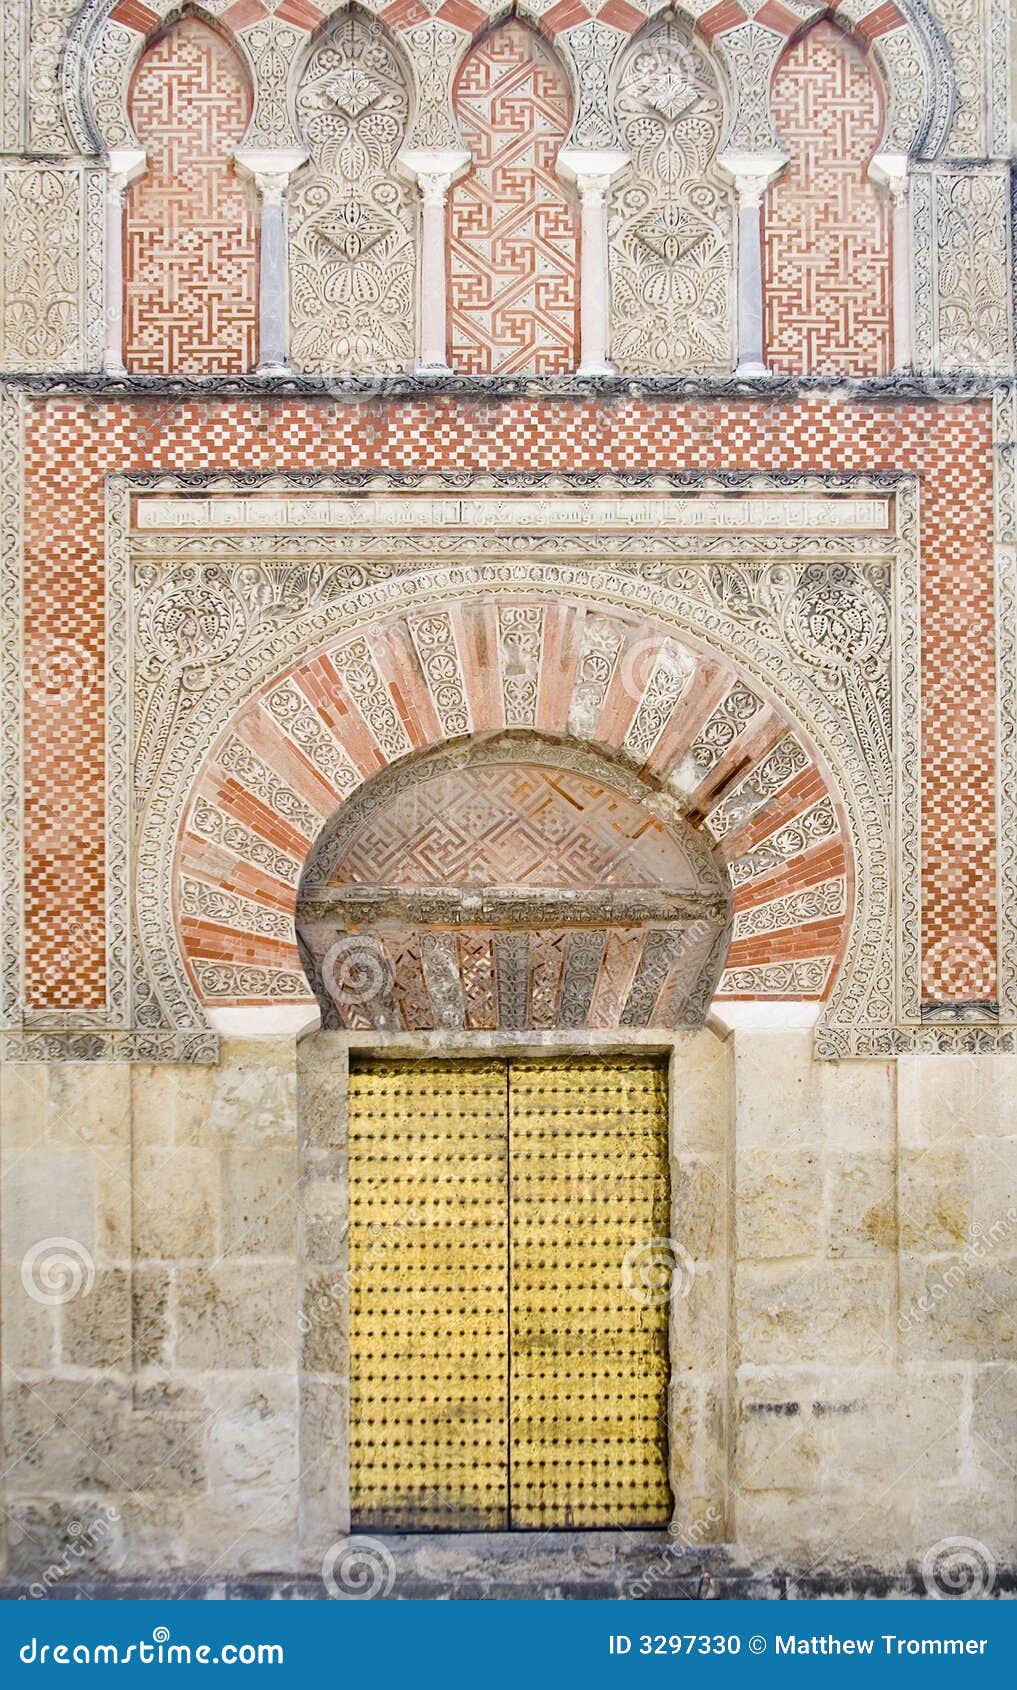 intricate door of the mezquita